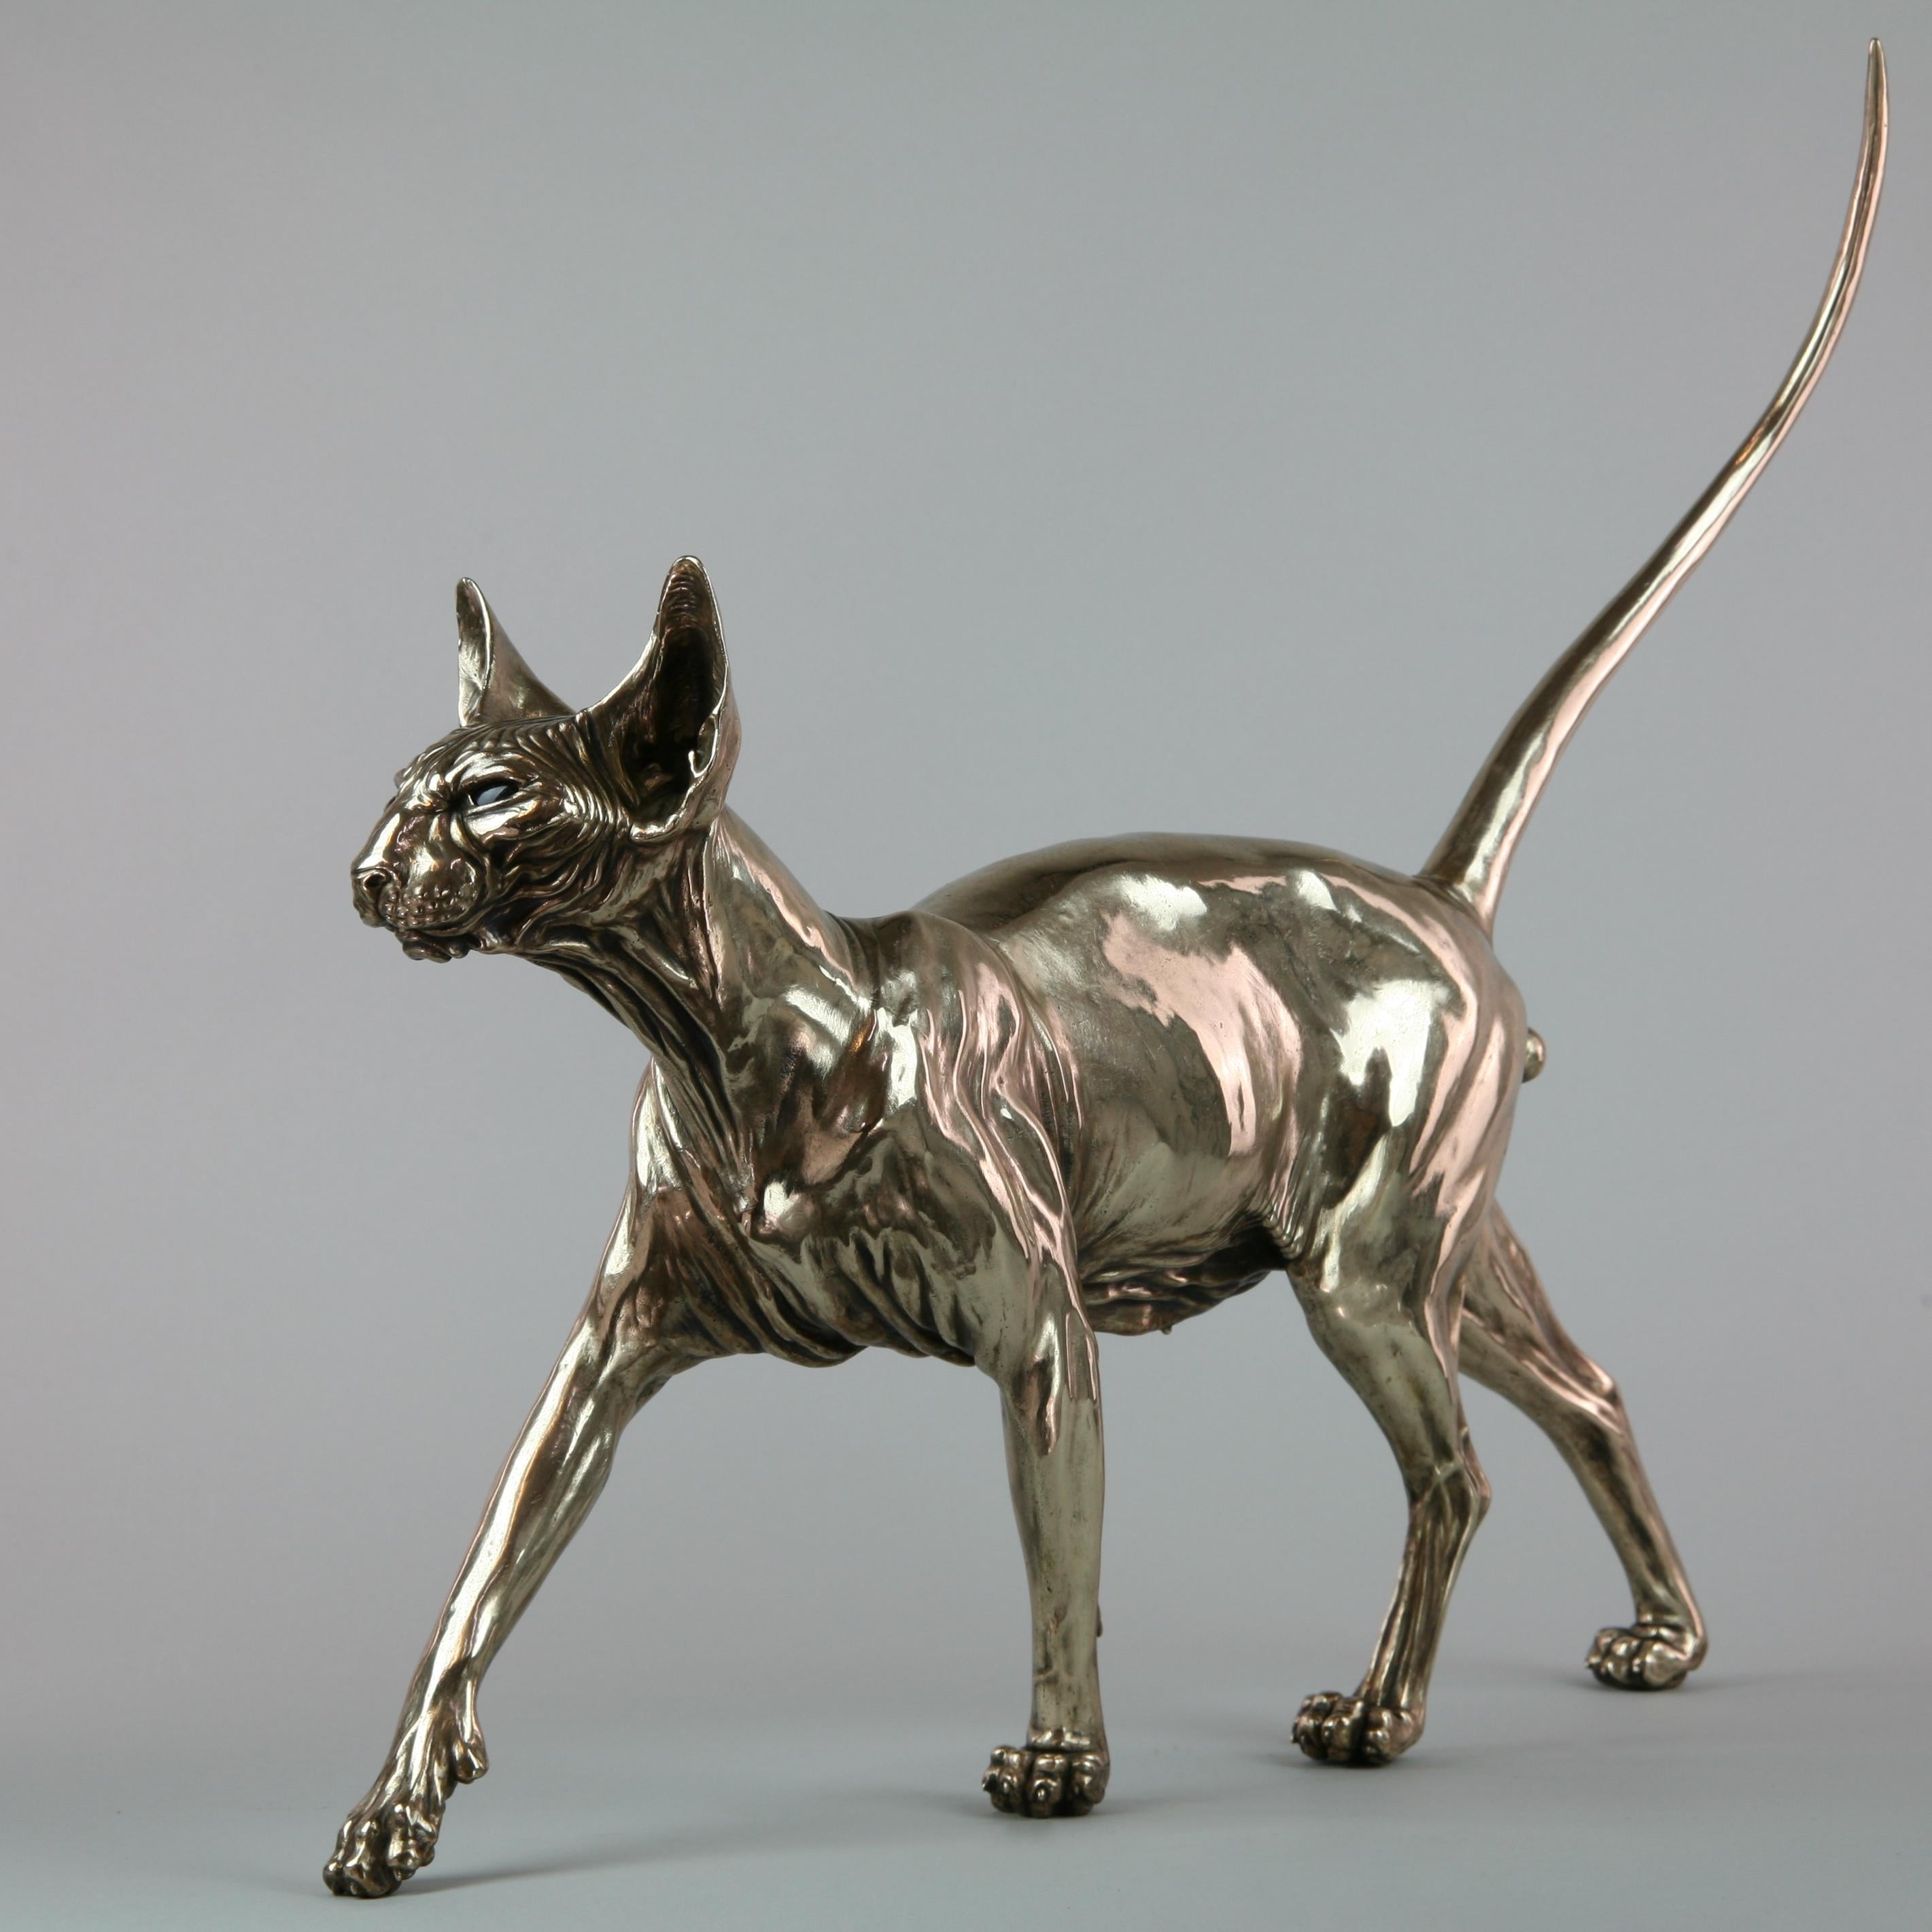 Sphynx Cat II - sculpture wildlife animal limited edition bronze modern marine 2